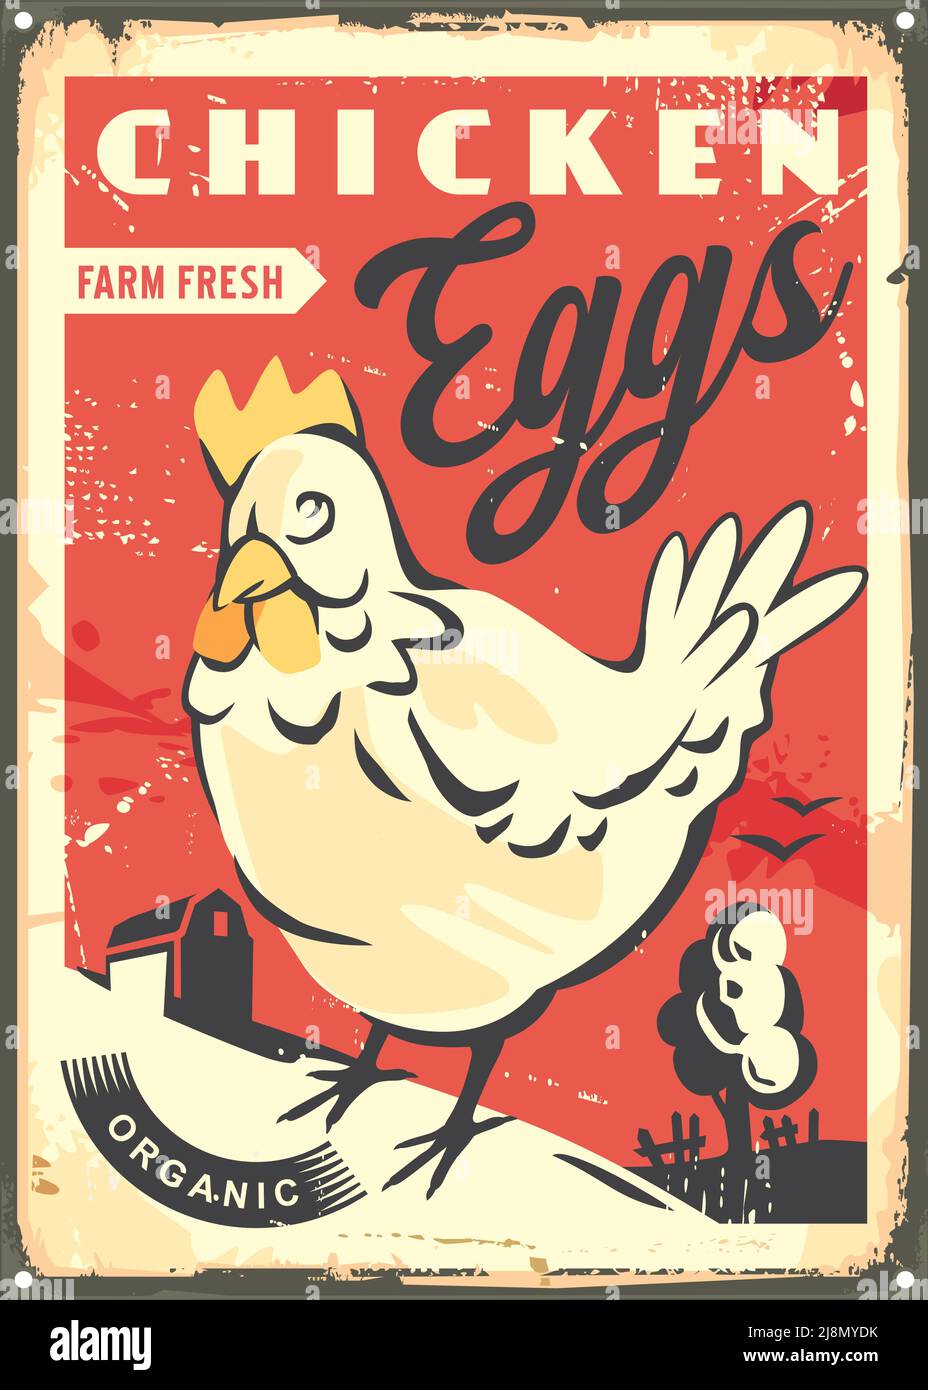 Farm frische Hühnereier Retro-Werbung Metall-Schild. Vintage-Design für tierhofeigene Produkte. Henne Zeichnung mit Landschaft. Stock Vektor